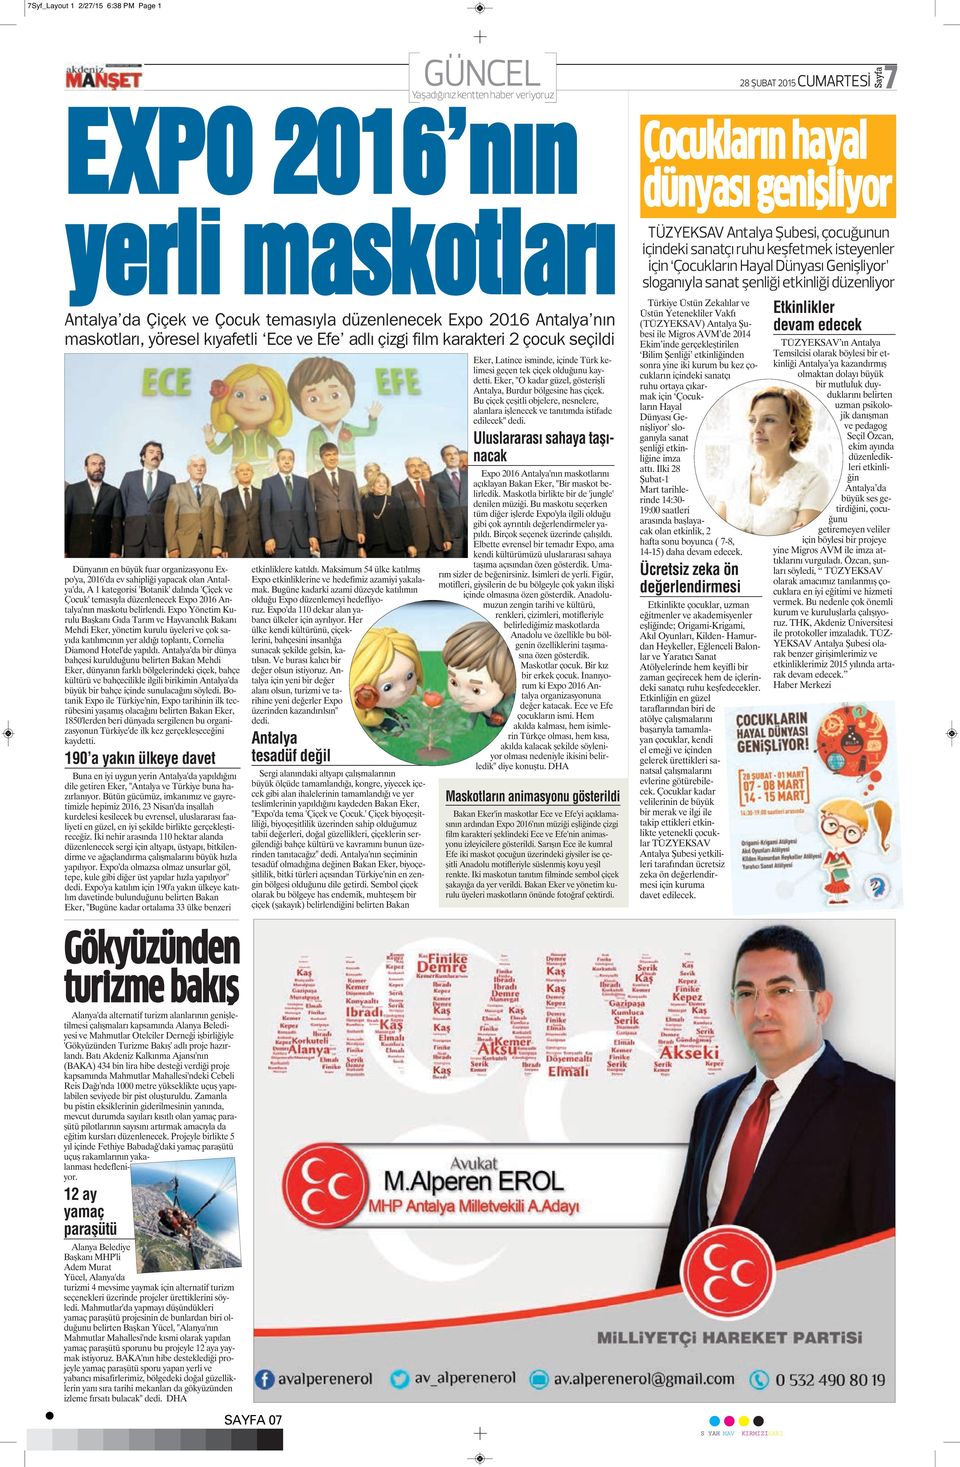 Expo 2016 Antalya'nın maskotu belirlendi.